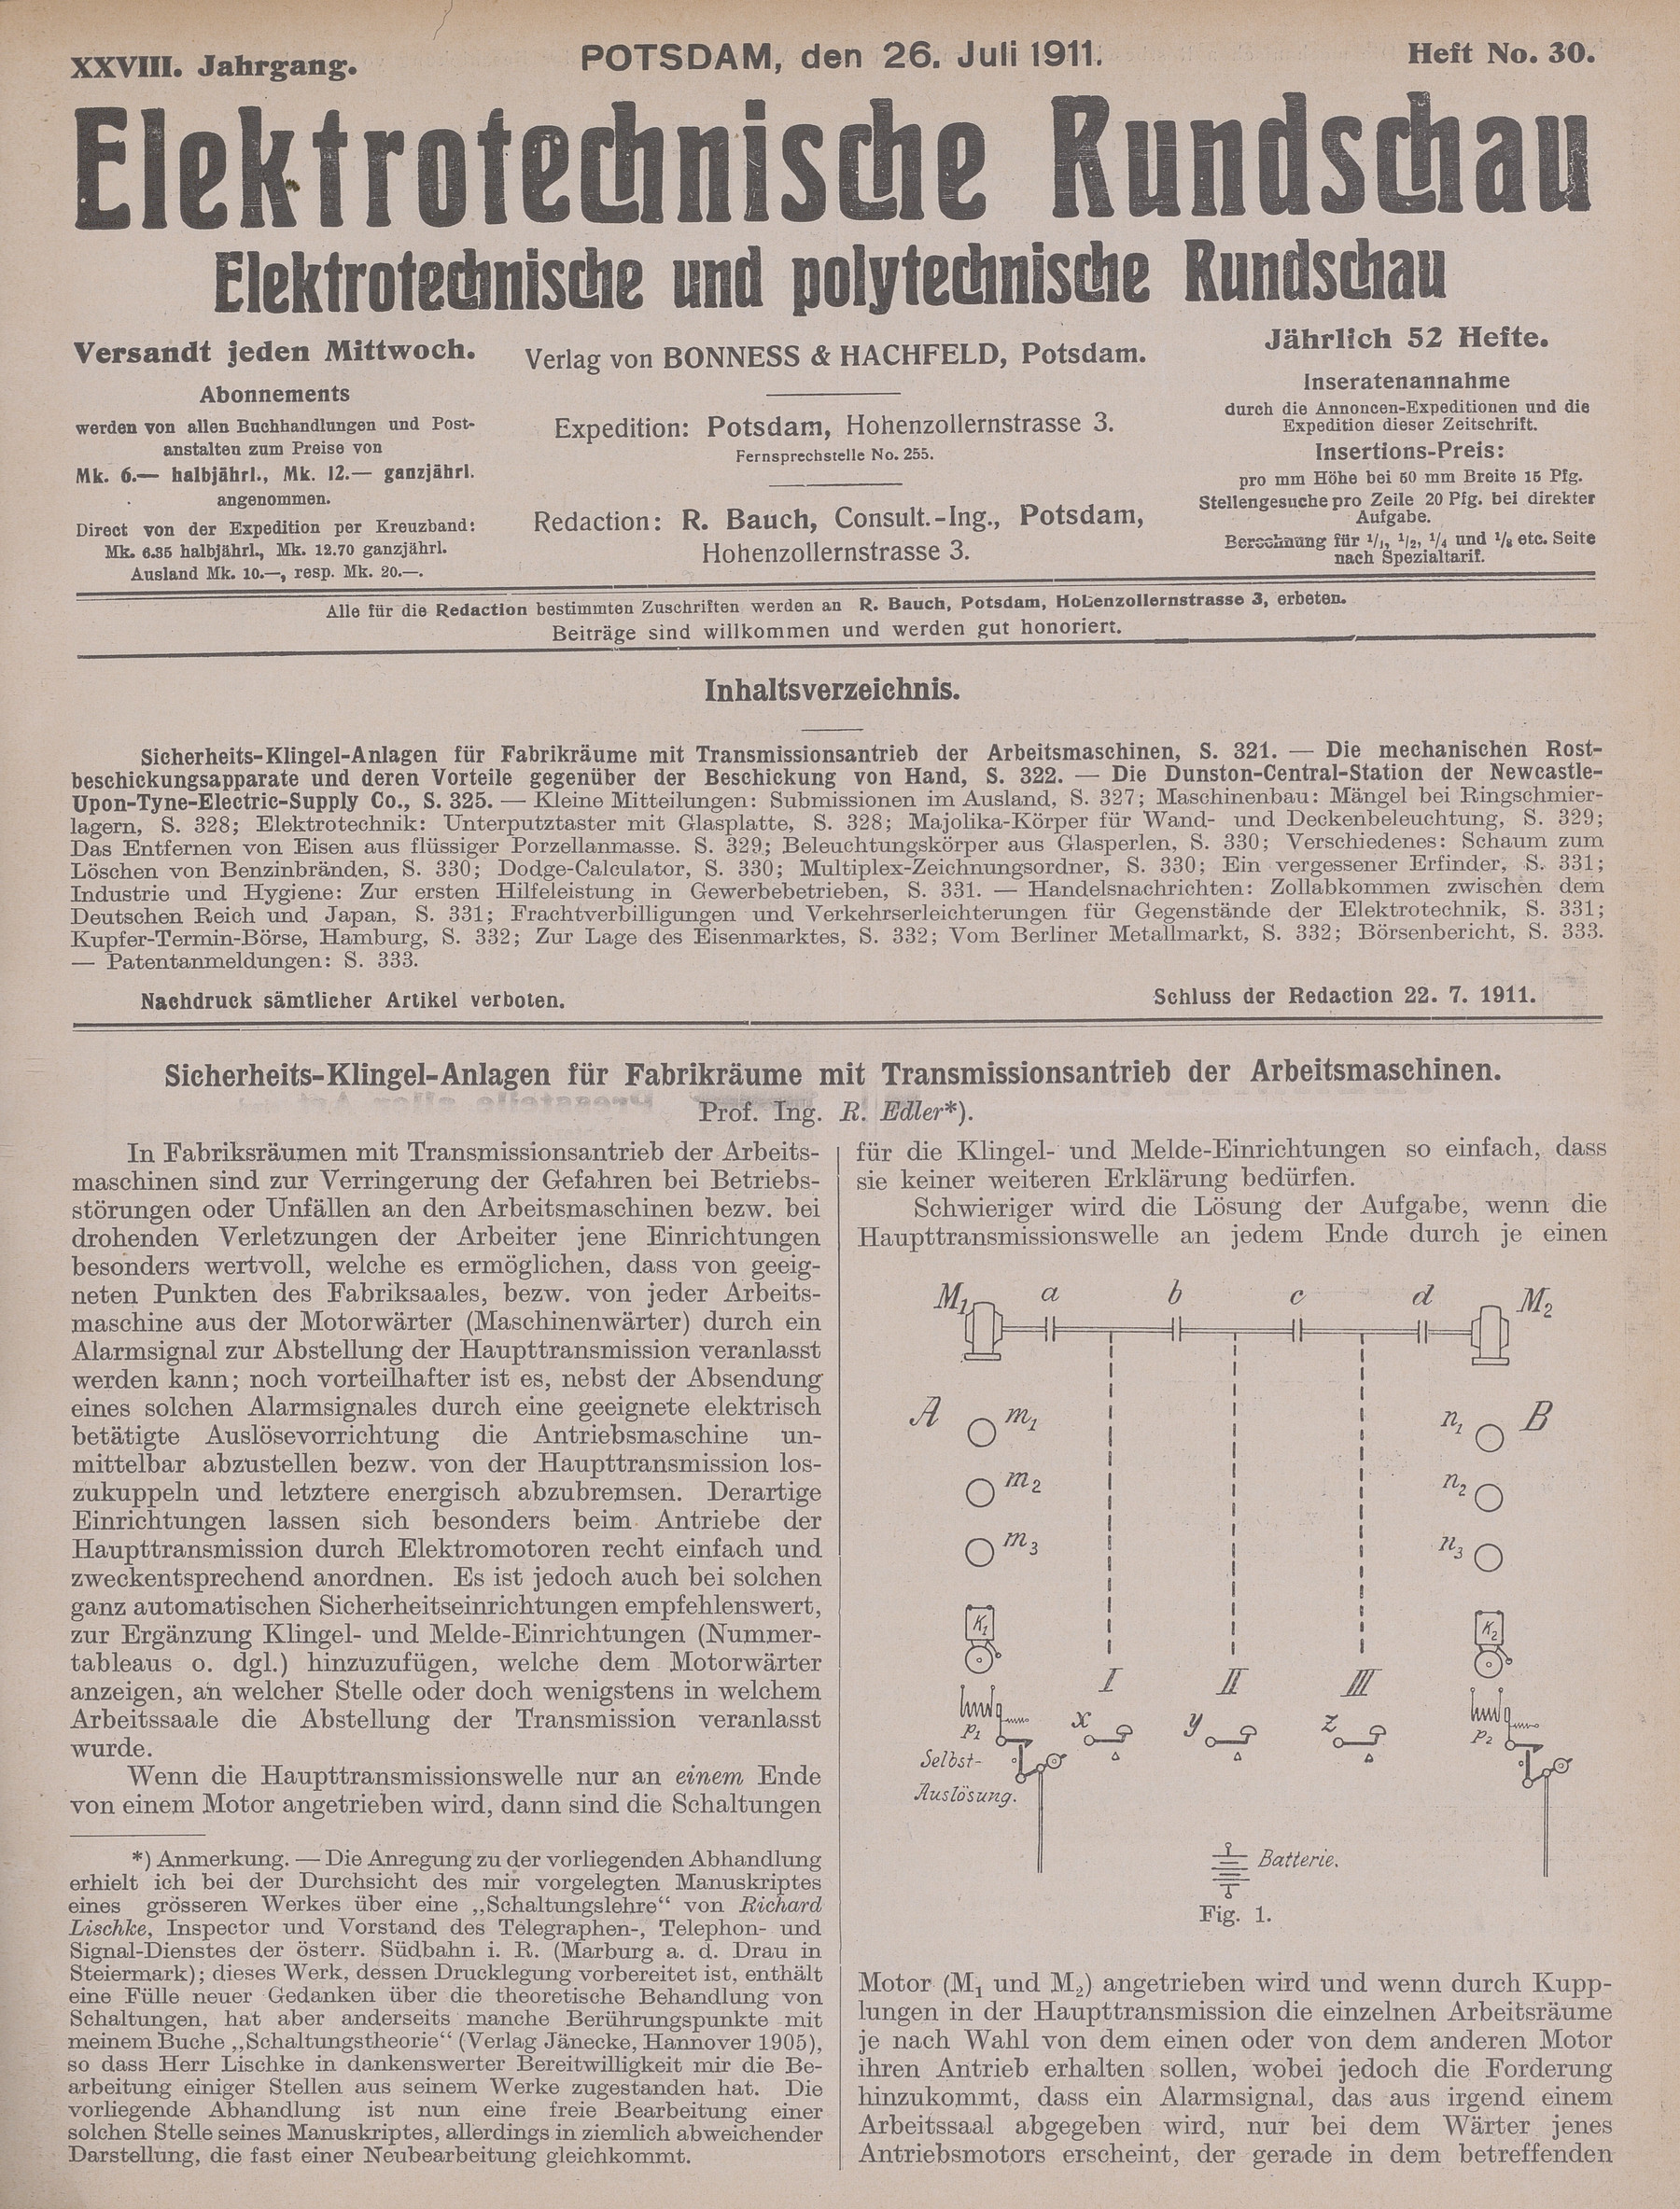 Elektrotechnische Rundschau : Elektrotechnische und polytechnische Rundschau, XXVIII. Jahrgang, Heft No. 30